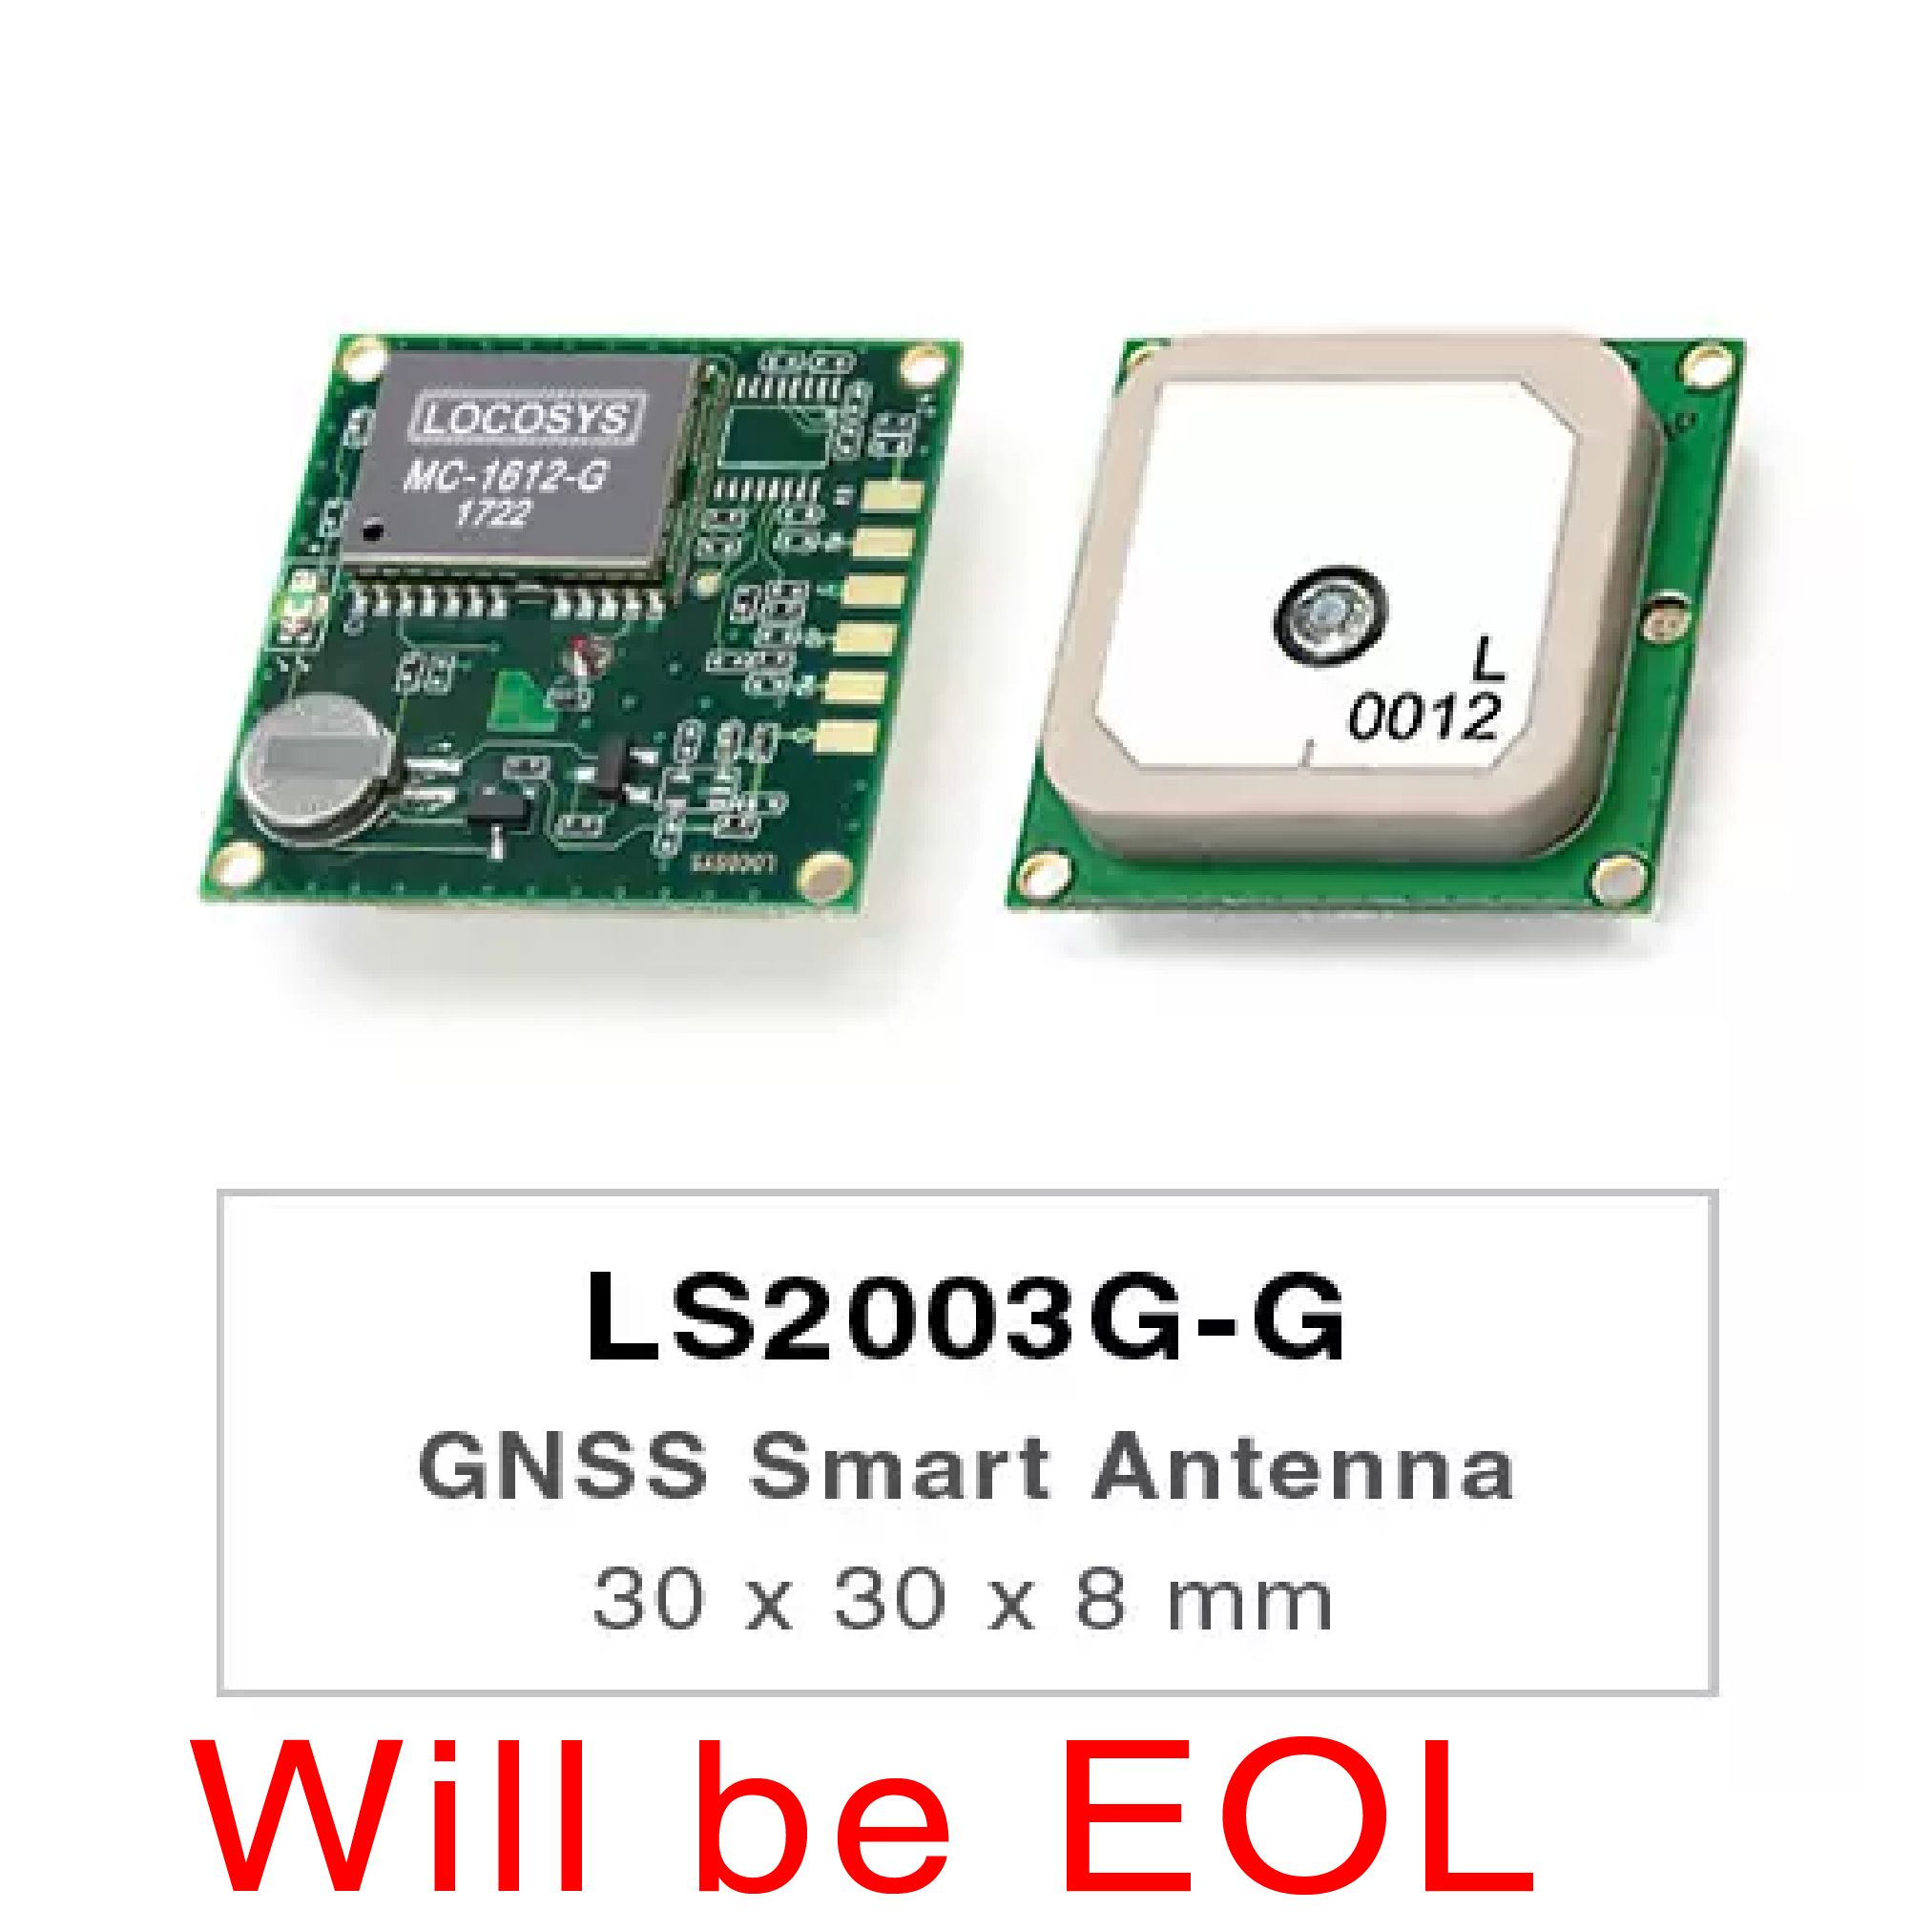 Die Produkte der LS2003G-G-Serie sind vollständige eigenständige GNSS-Smart-Antennenmodule, einschließlich einer eingebetteten Antenne und GNSS-Empfängerschaltungen, die für ein breites Spektrum von OEM-Systemanwendungen entwickelt wurden.